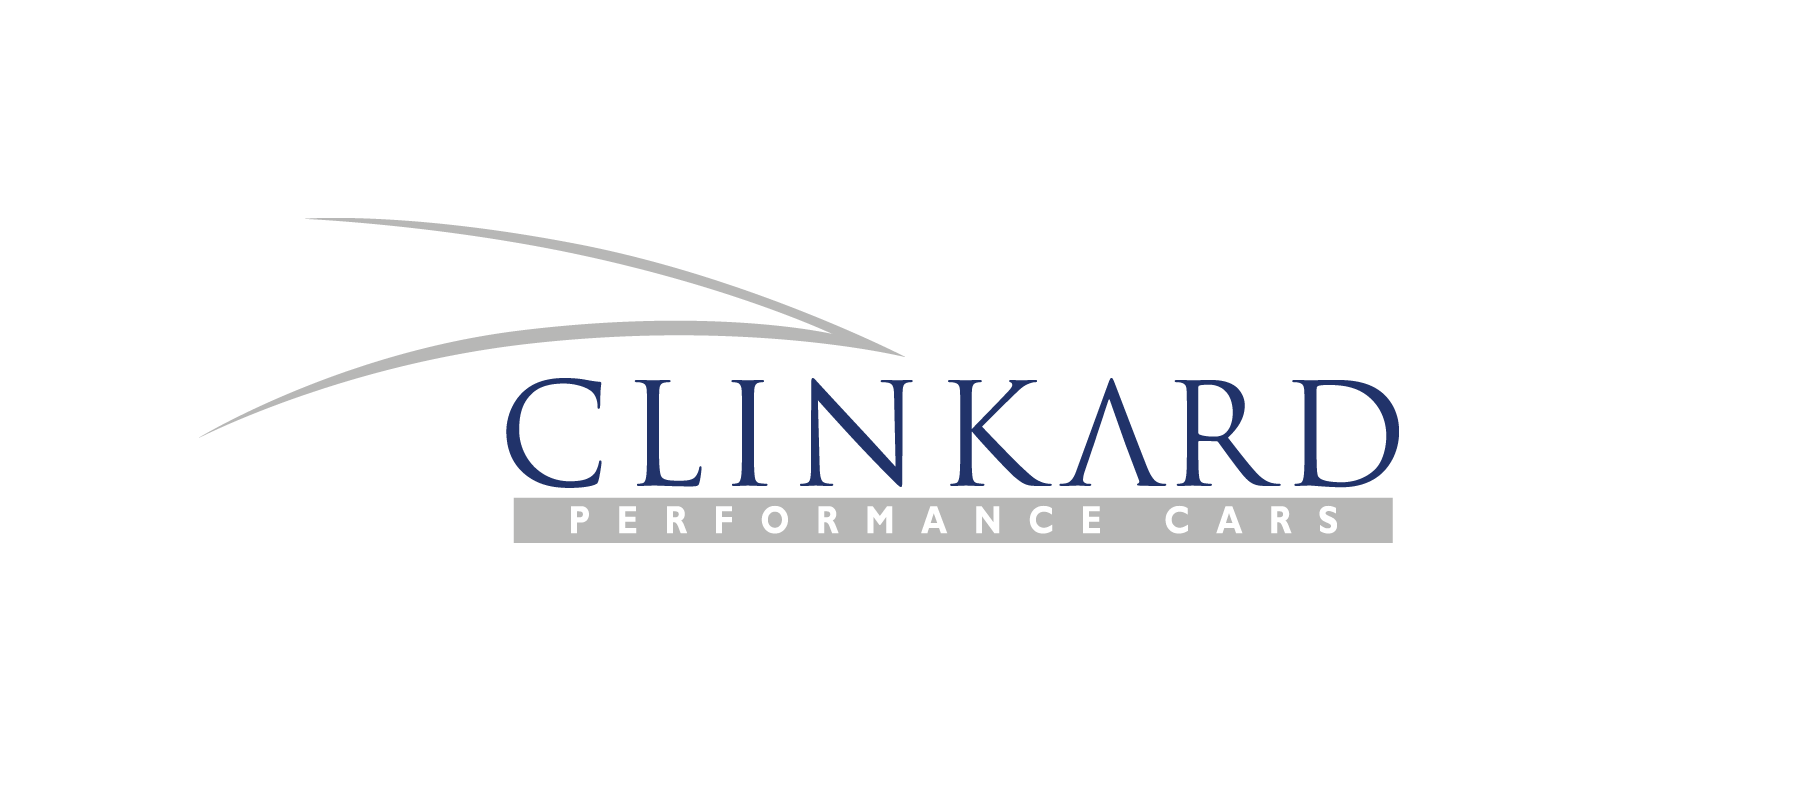 www.clinkardcars.co.uk